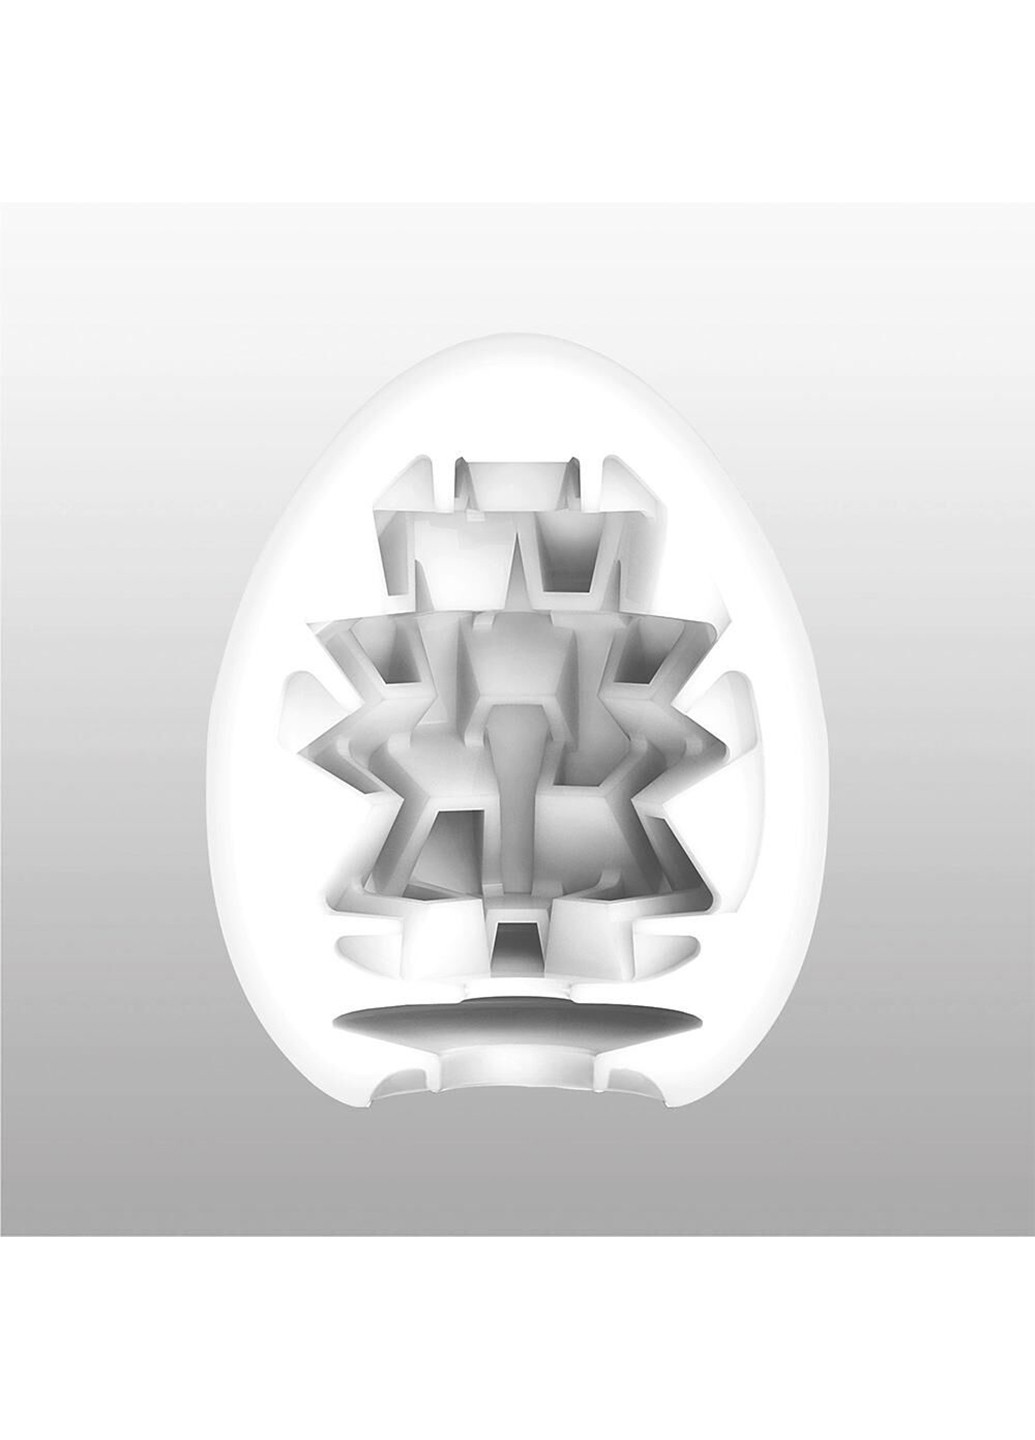 Мастурбатор-яйце Egg Boxy з геометричним рельєфом Tenga (254152204)